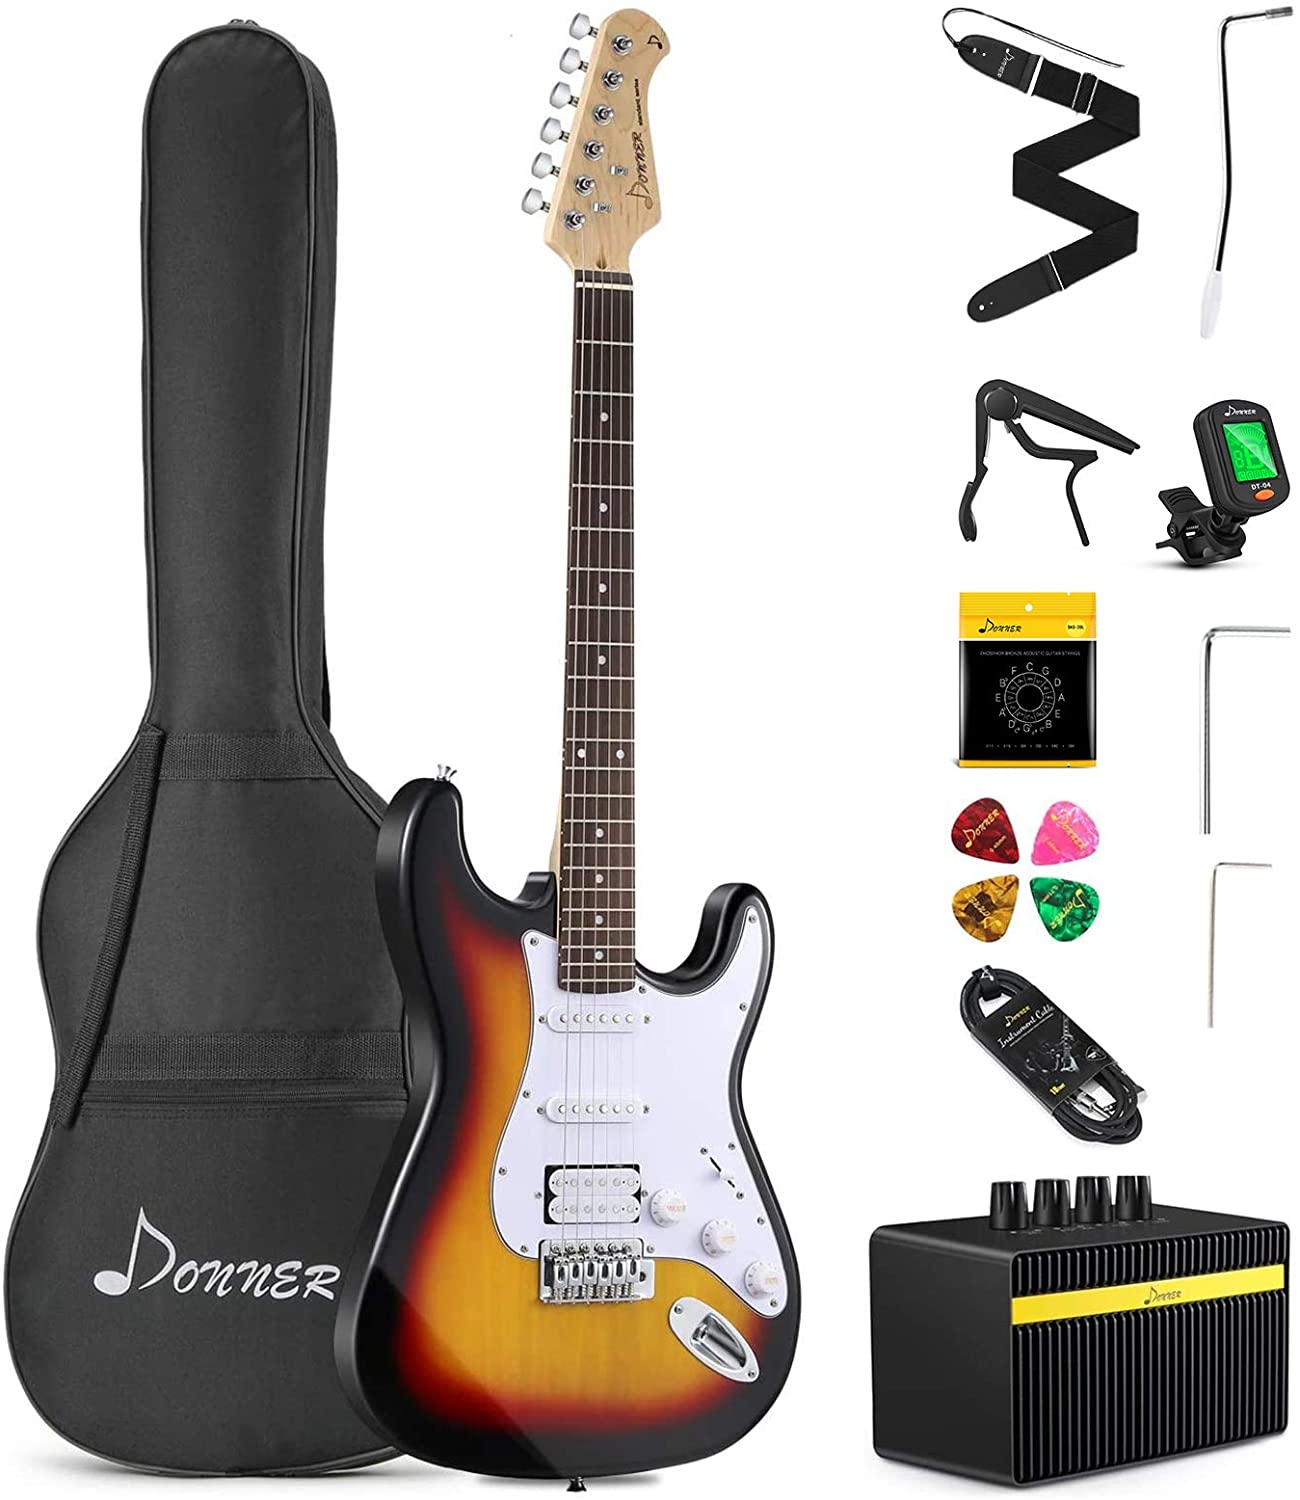 Donner Electric Guitar Beginner Kit